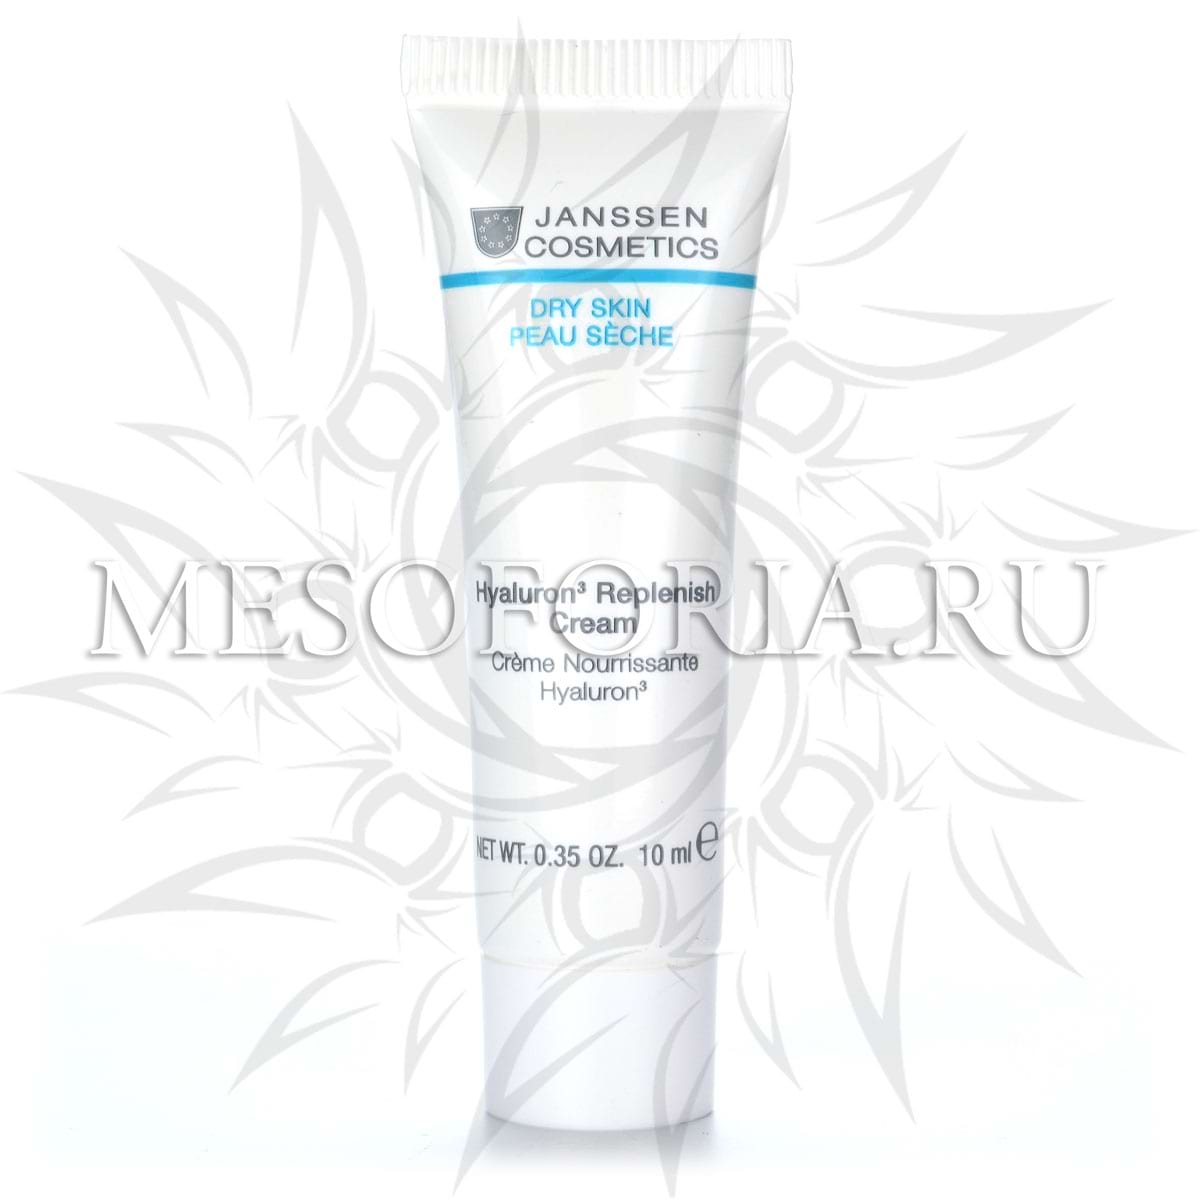 Регенерирующий крем с гиалуроновой кислотой насыщенной текстуры / Hyaluron3 Replenish Cream, Dry Skin, Janssen Cosmetics (Янсен косметика), 10 мл